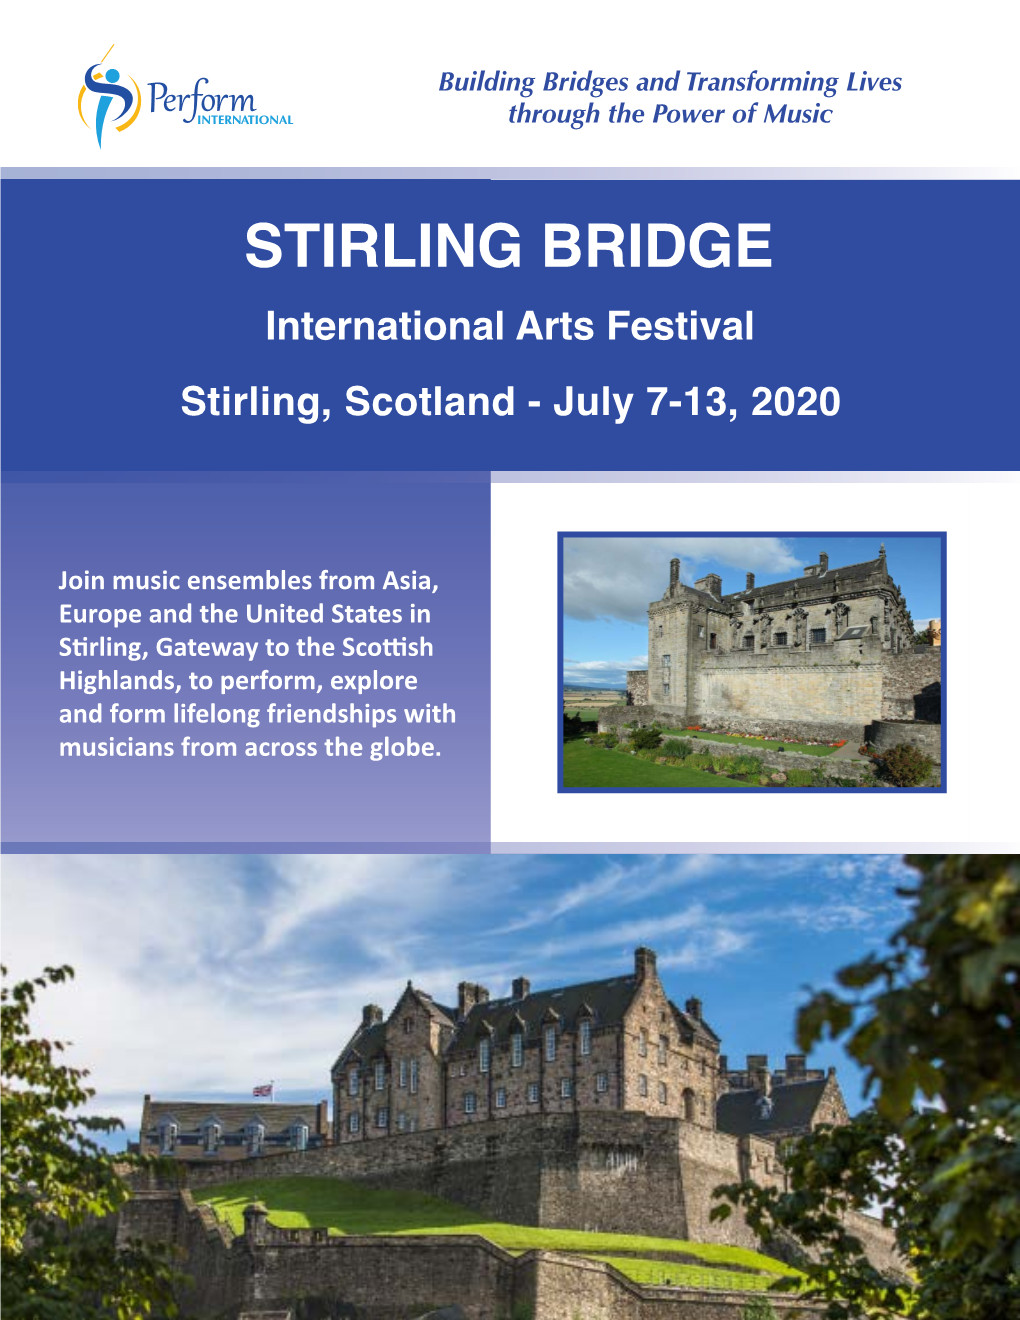 STIRLING BRIDGE International Arts Festival Stirling, Scotland - July 7-13, 2020